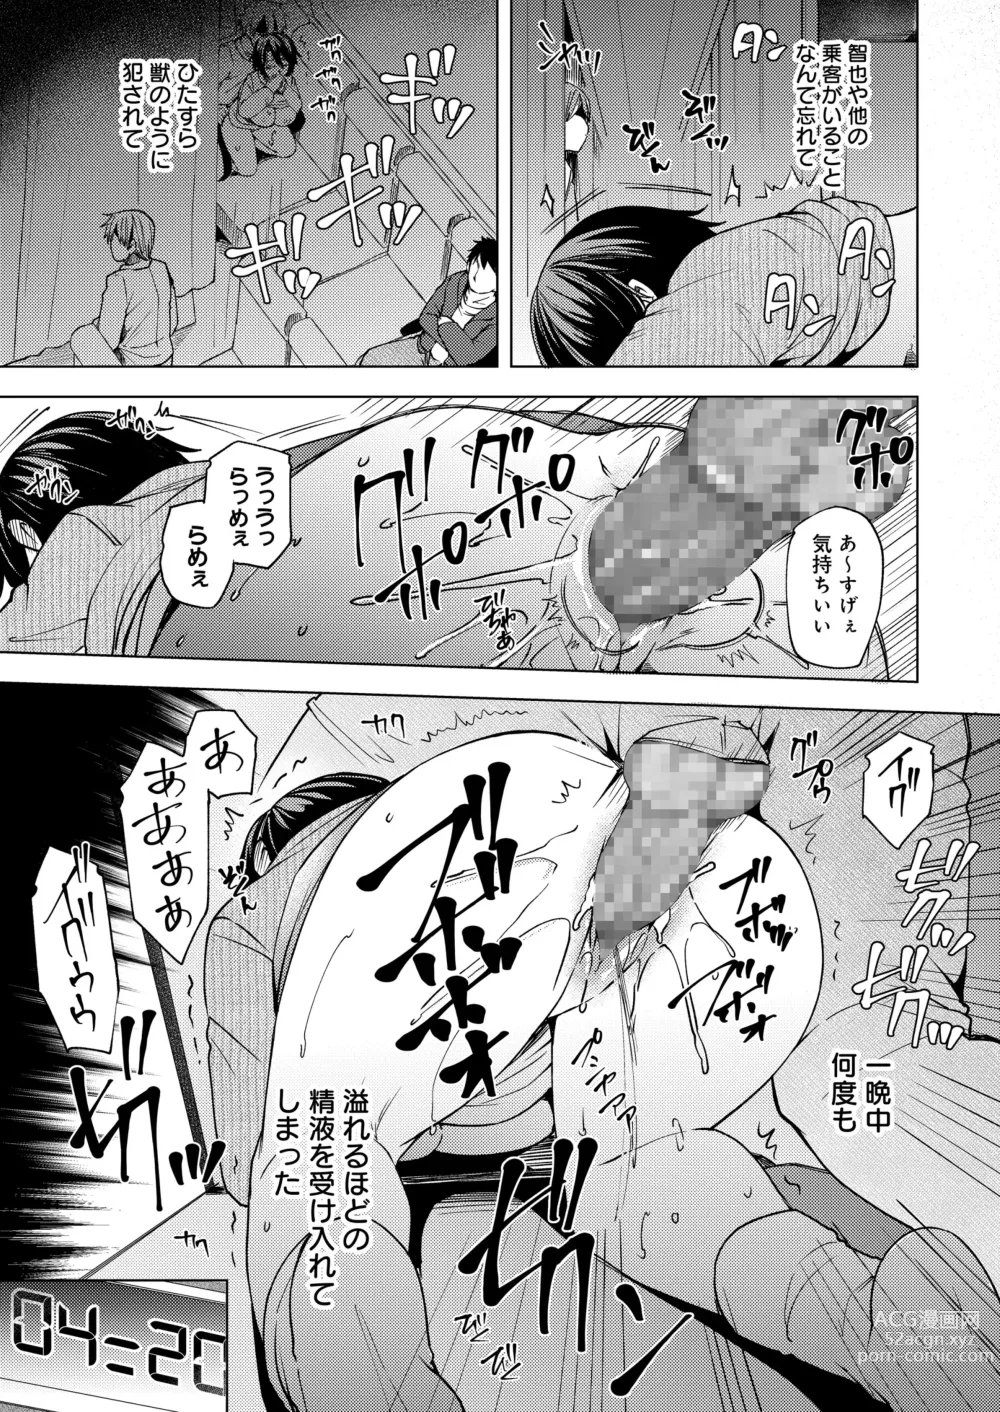 Page 37 of doujinshi 夜行バスで痴漢され寝取られた妻